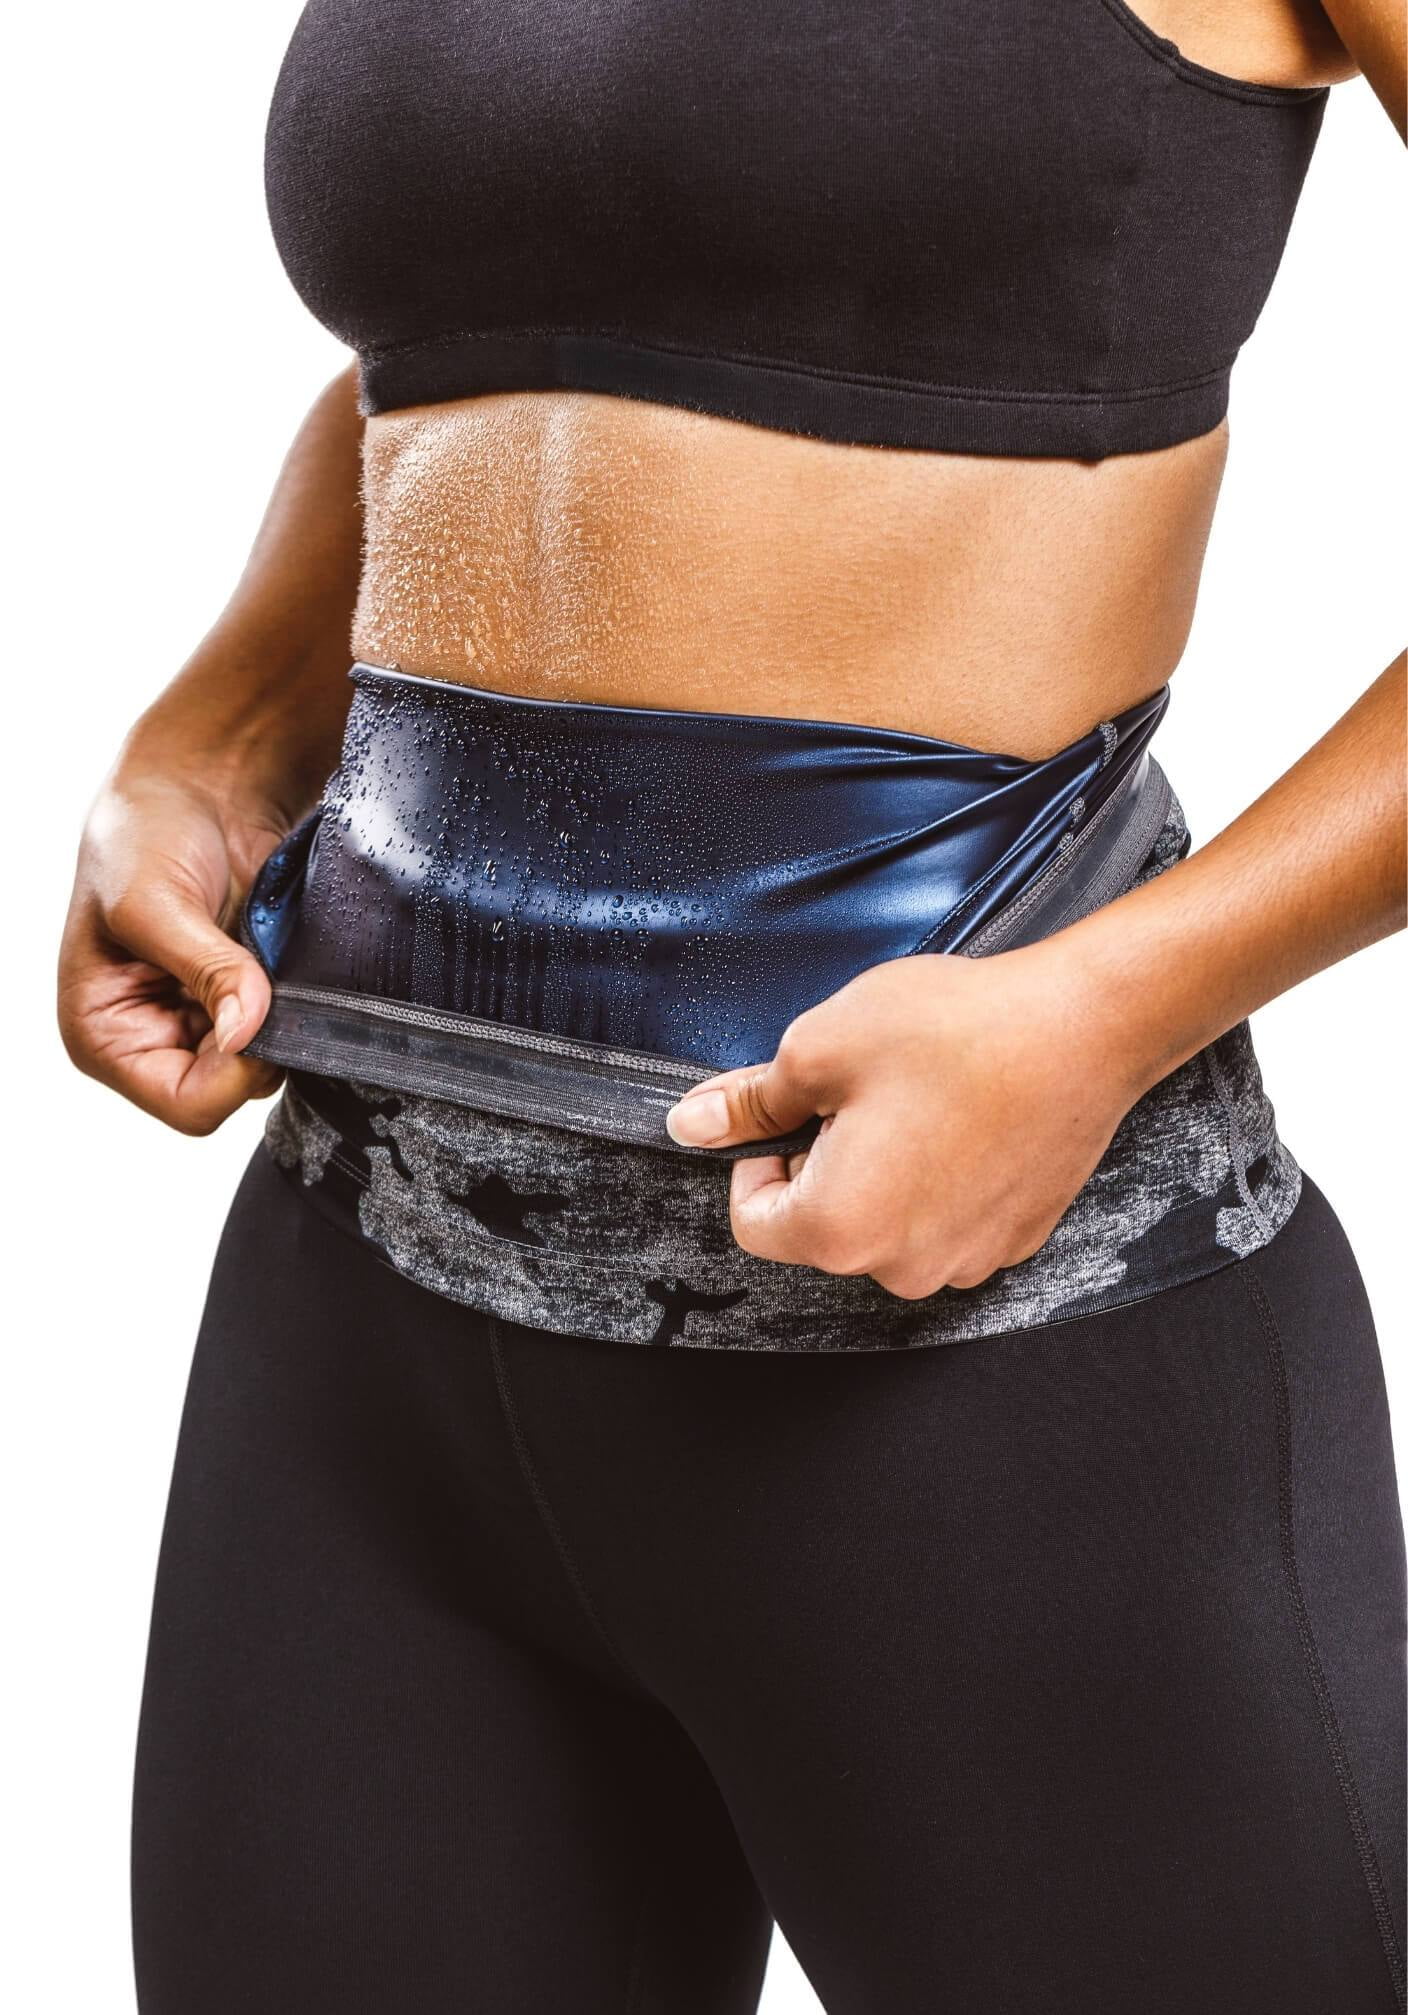 ALINBAIST Waist Trainer Trimmer Cincher Womens Long Torso Workout Sweat  Bands Sauna Belt lose Belly Fat : : Sports & Outdoors